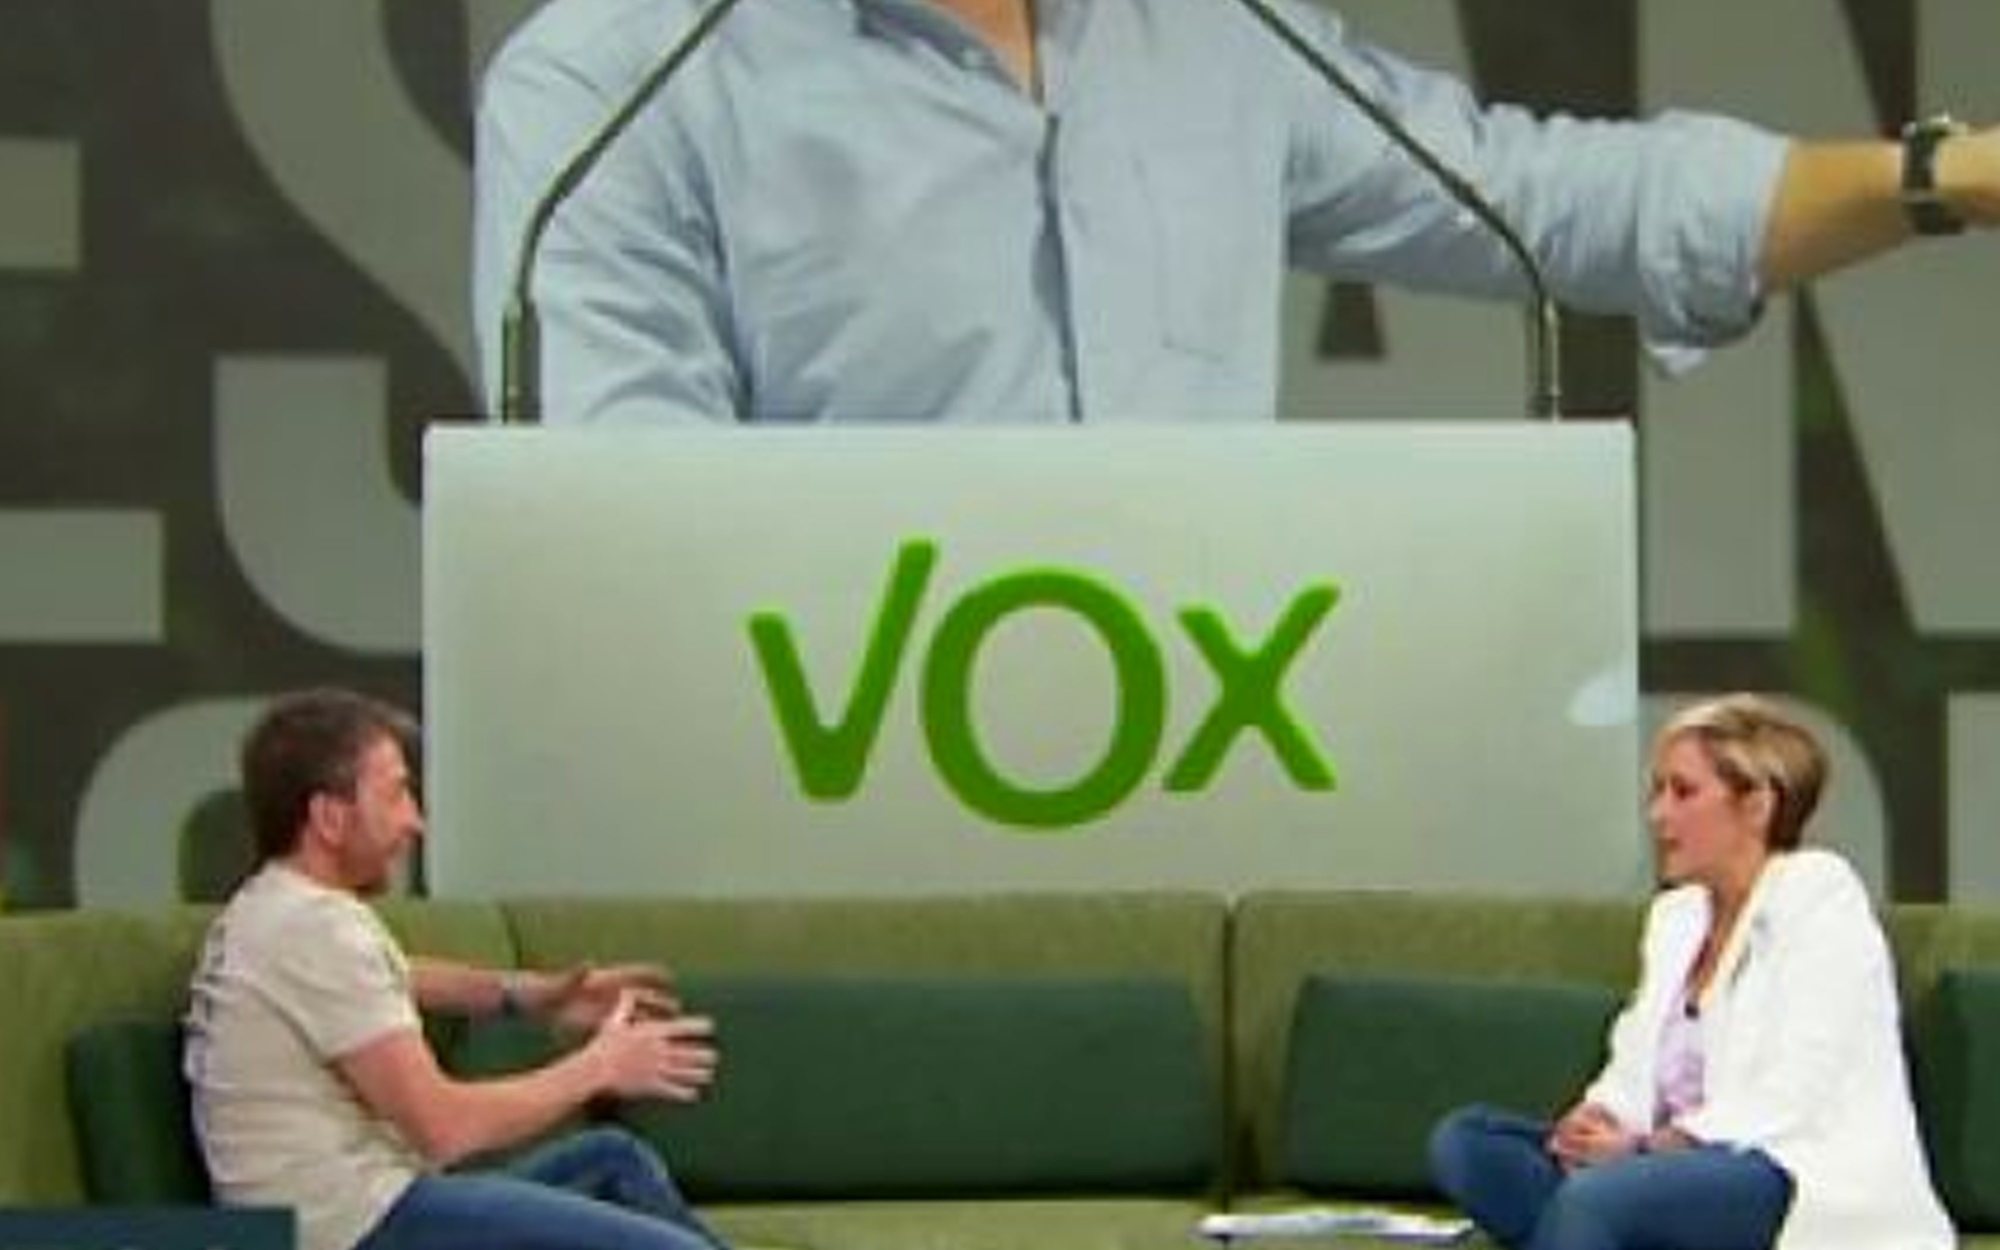 Pablo Motos recuerda su "desagradable" entrevista con Abascal: "Me amenazaron e insultaron los de Vox"